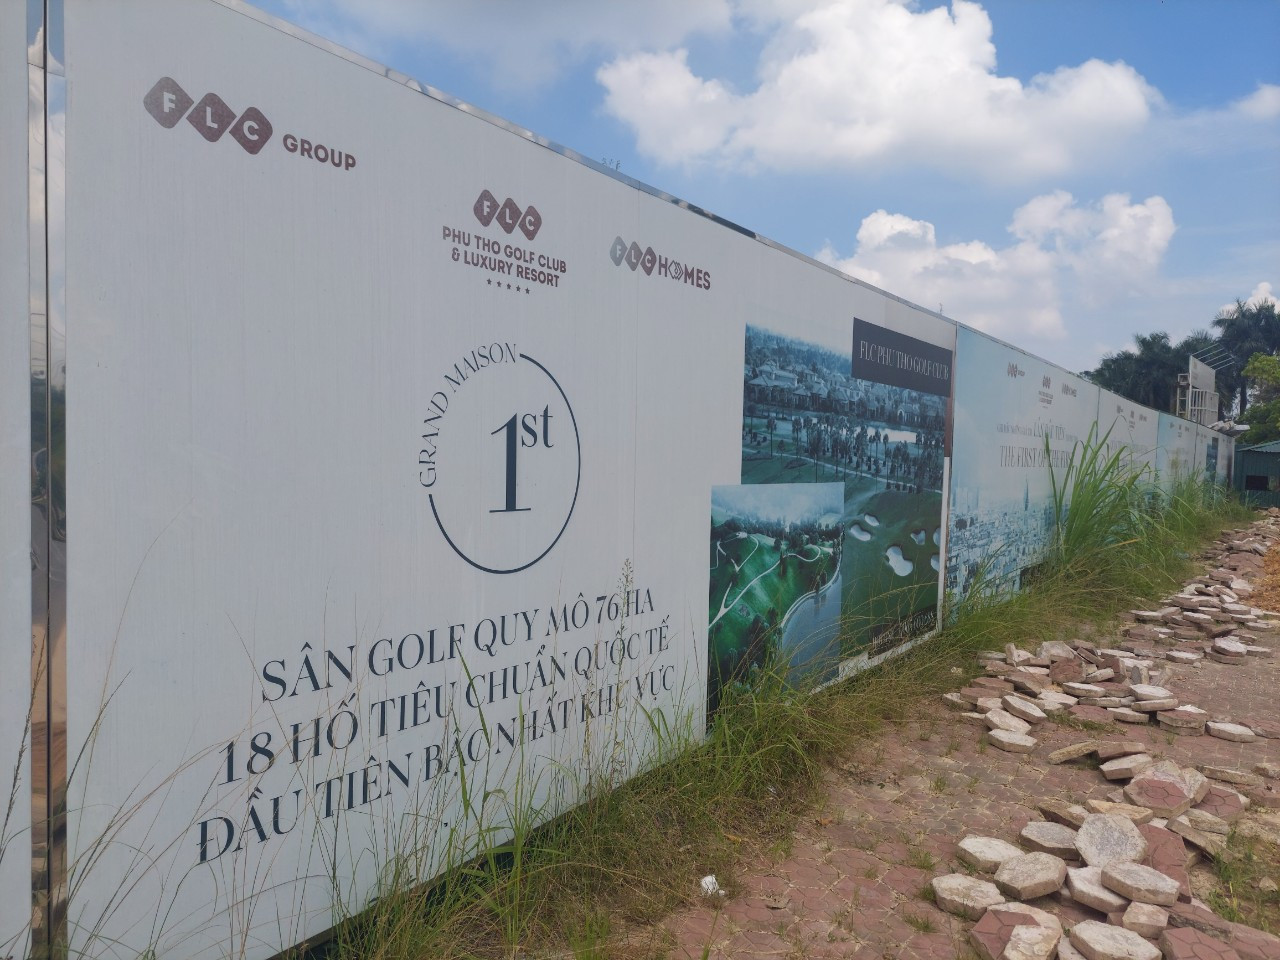 Trái ngược với những tấm bảng quảng cáo được treo bên ngoài với thông tin Ghi dấu những giá trị lần đầu tiên tại Phú Thọ. Kiến trúc Pháp Haussmann đầu tiên, sân golf quy mô 76ha _18 hố tiêu chuẩn quốc tế đầu tiên bậc nhất khu vực...